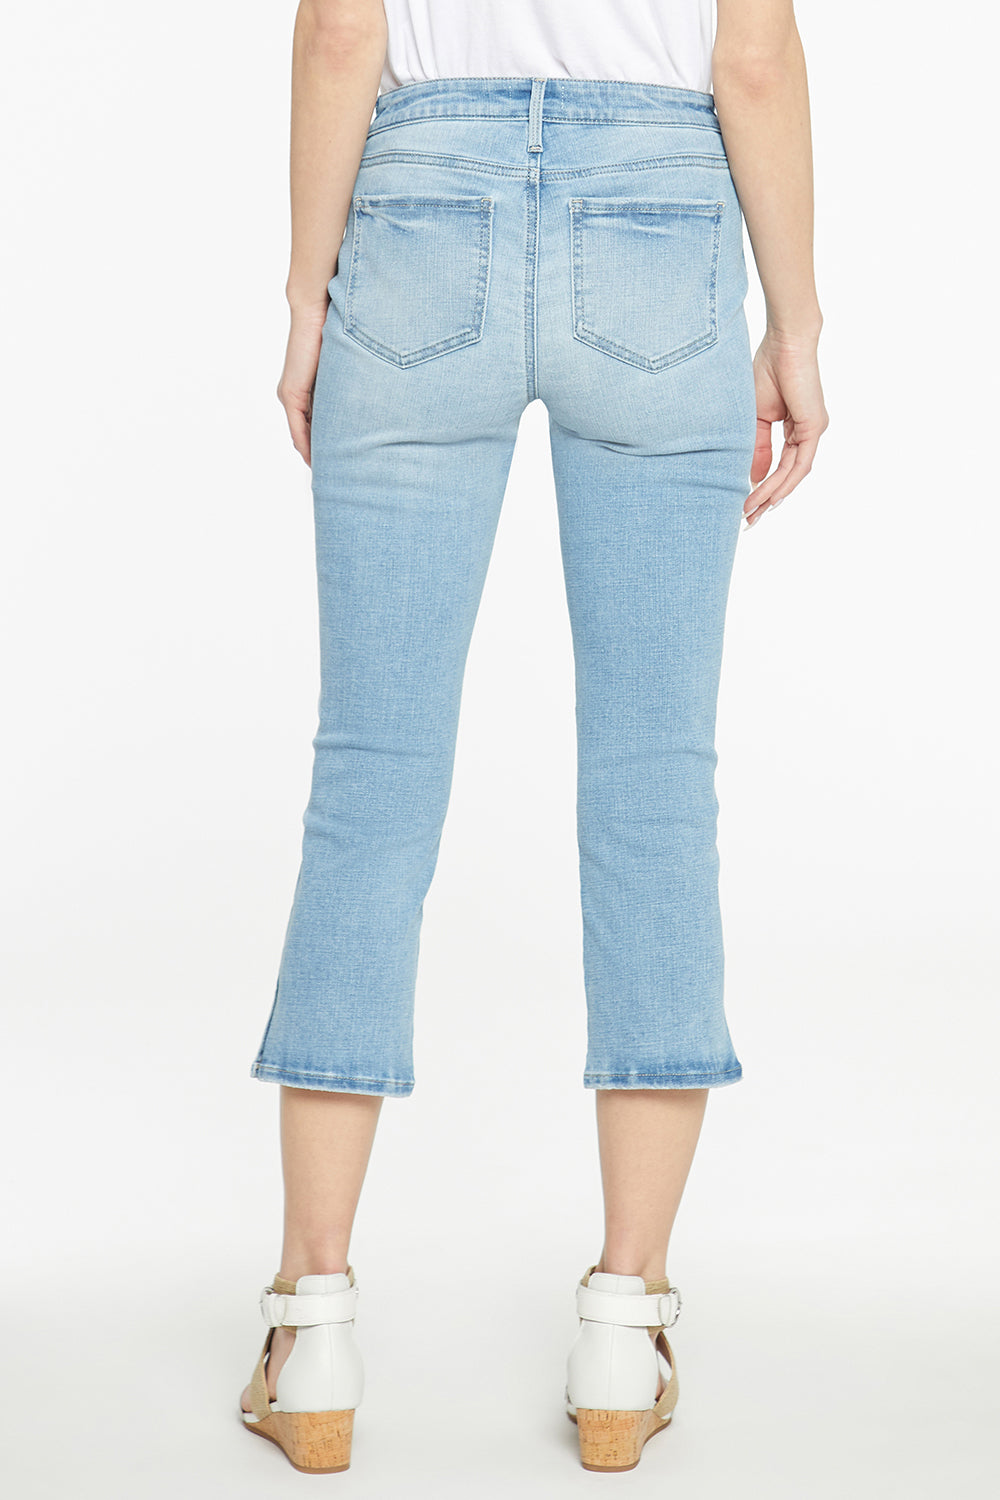 NYDJ Chloe Capri Jeans With Side Slits - Easley